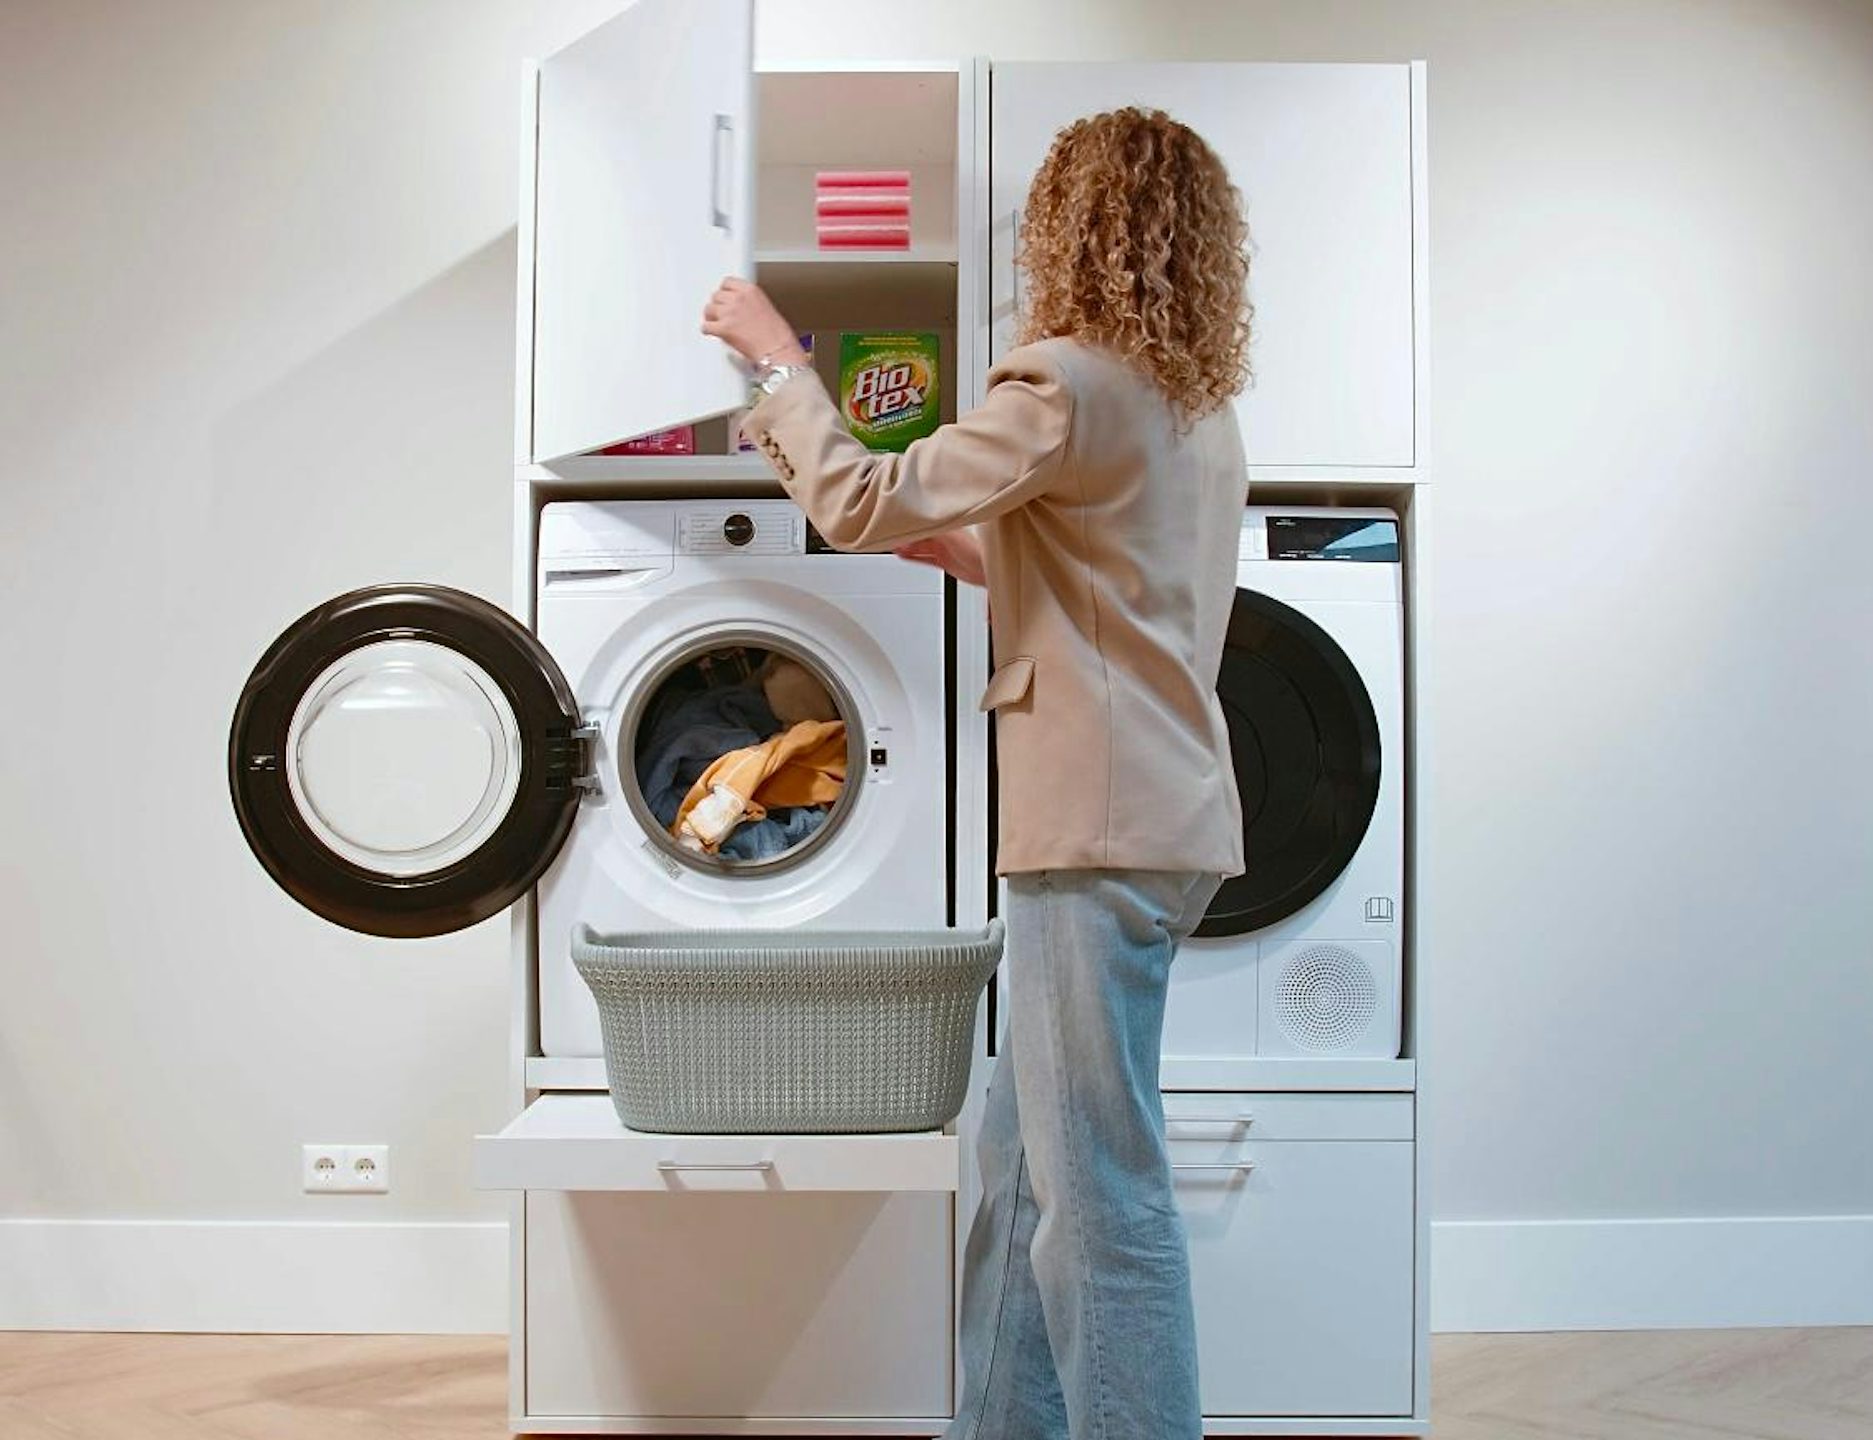 dubbele wasmachine kast wit met opberg bovenkasten inspiratie ideeen opruimen wasproducten wasbenodigdheden met uittrekplateau voor wasmand wasmachine en droger naast elkaar met korflade